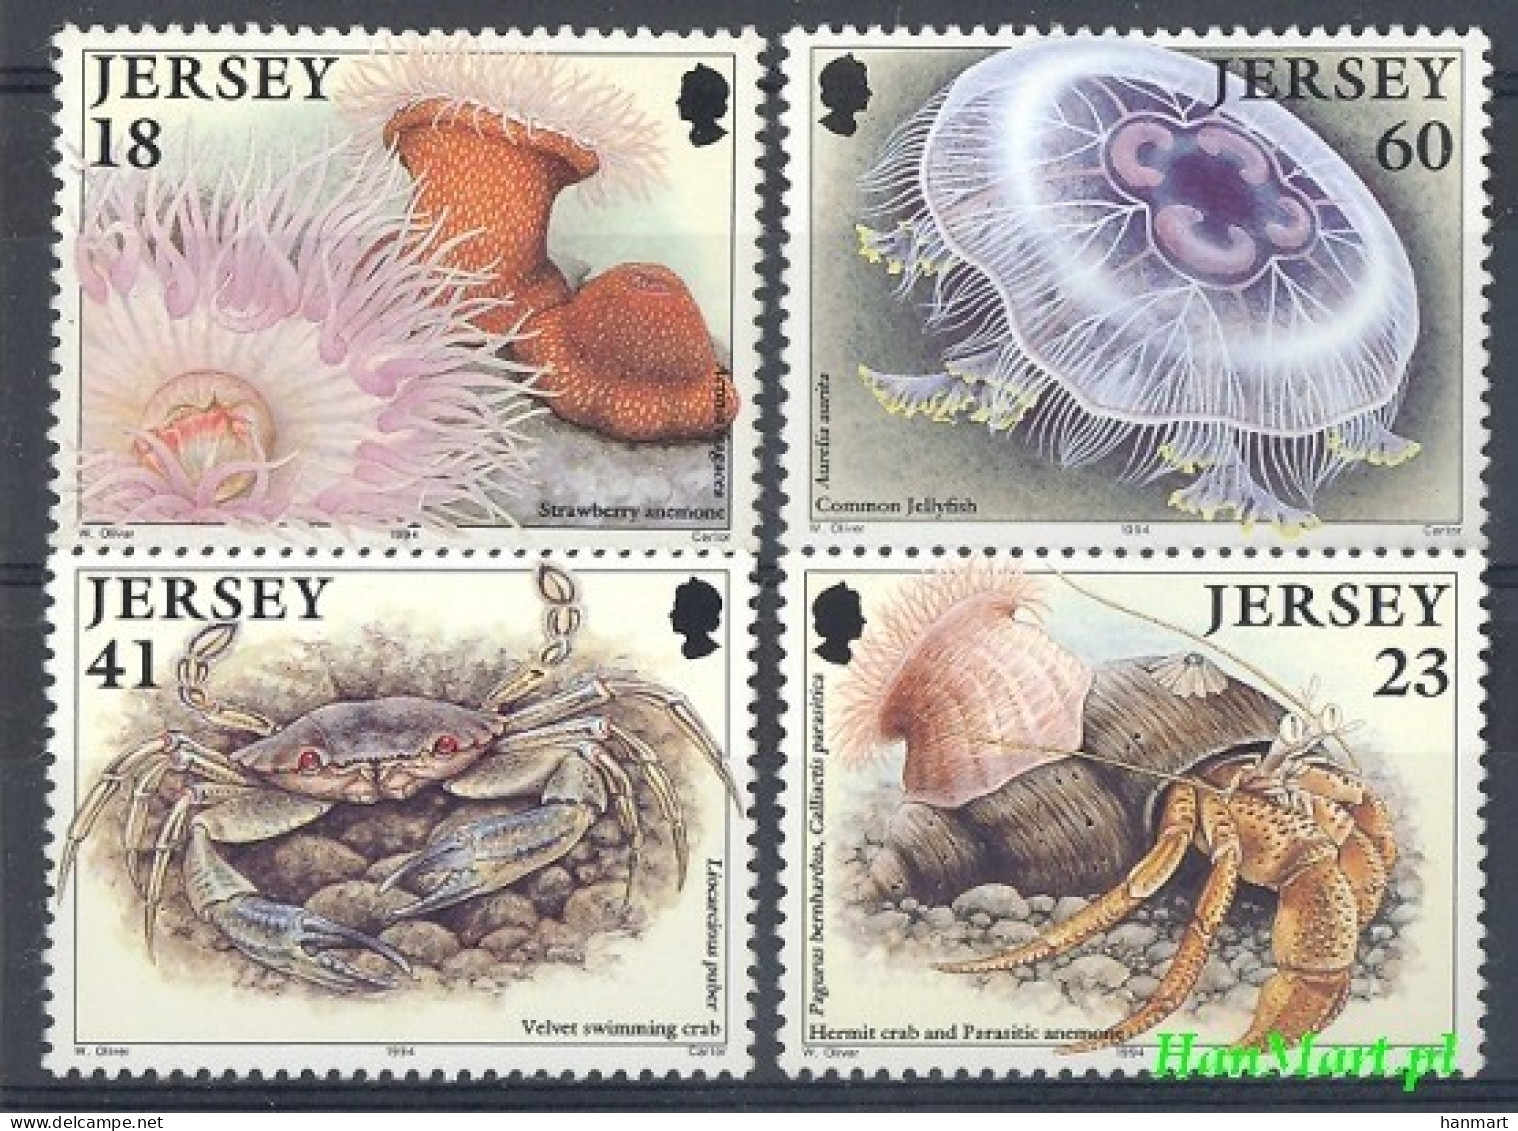 Jersey 1994 Mi 665-668 MNH  (ZE3 JRS665-668) - Crustaceans